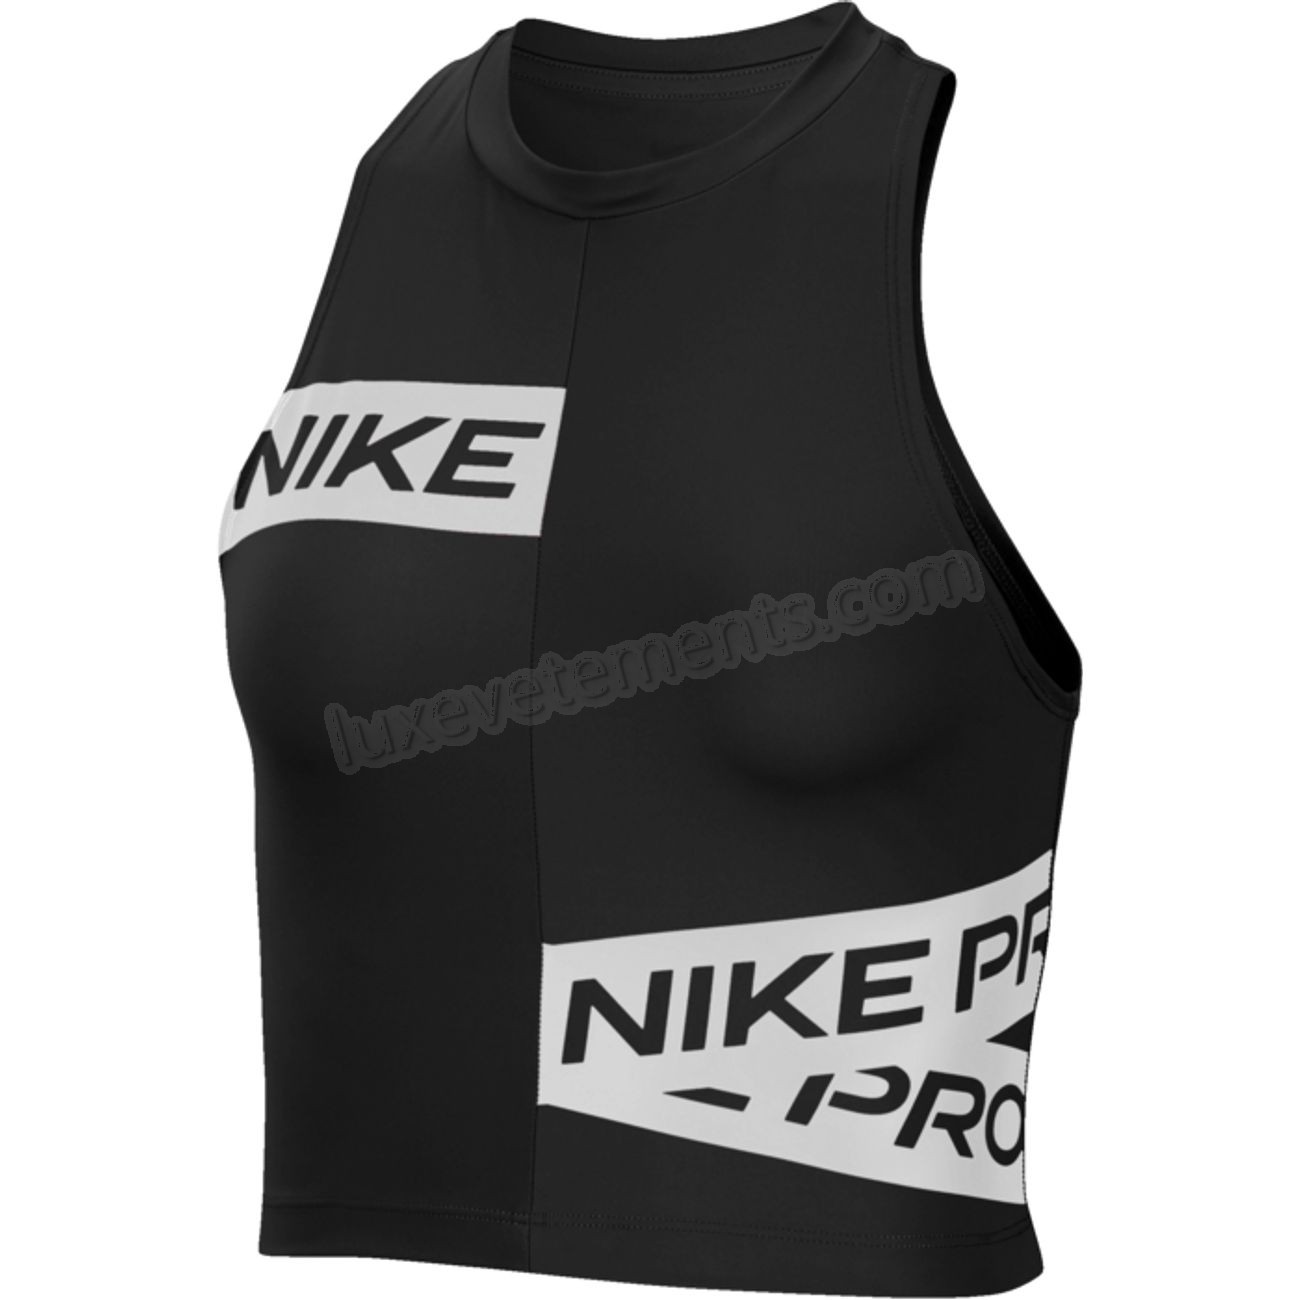 Nike-Crop Top femme NIKE Nike Pro Vente en ligne - Nike-Crop Top femme NIKE Nike Pro Vente en ligne